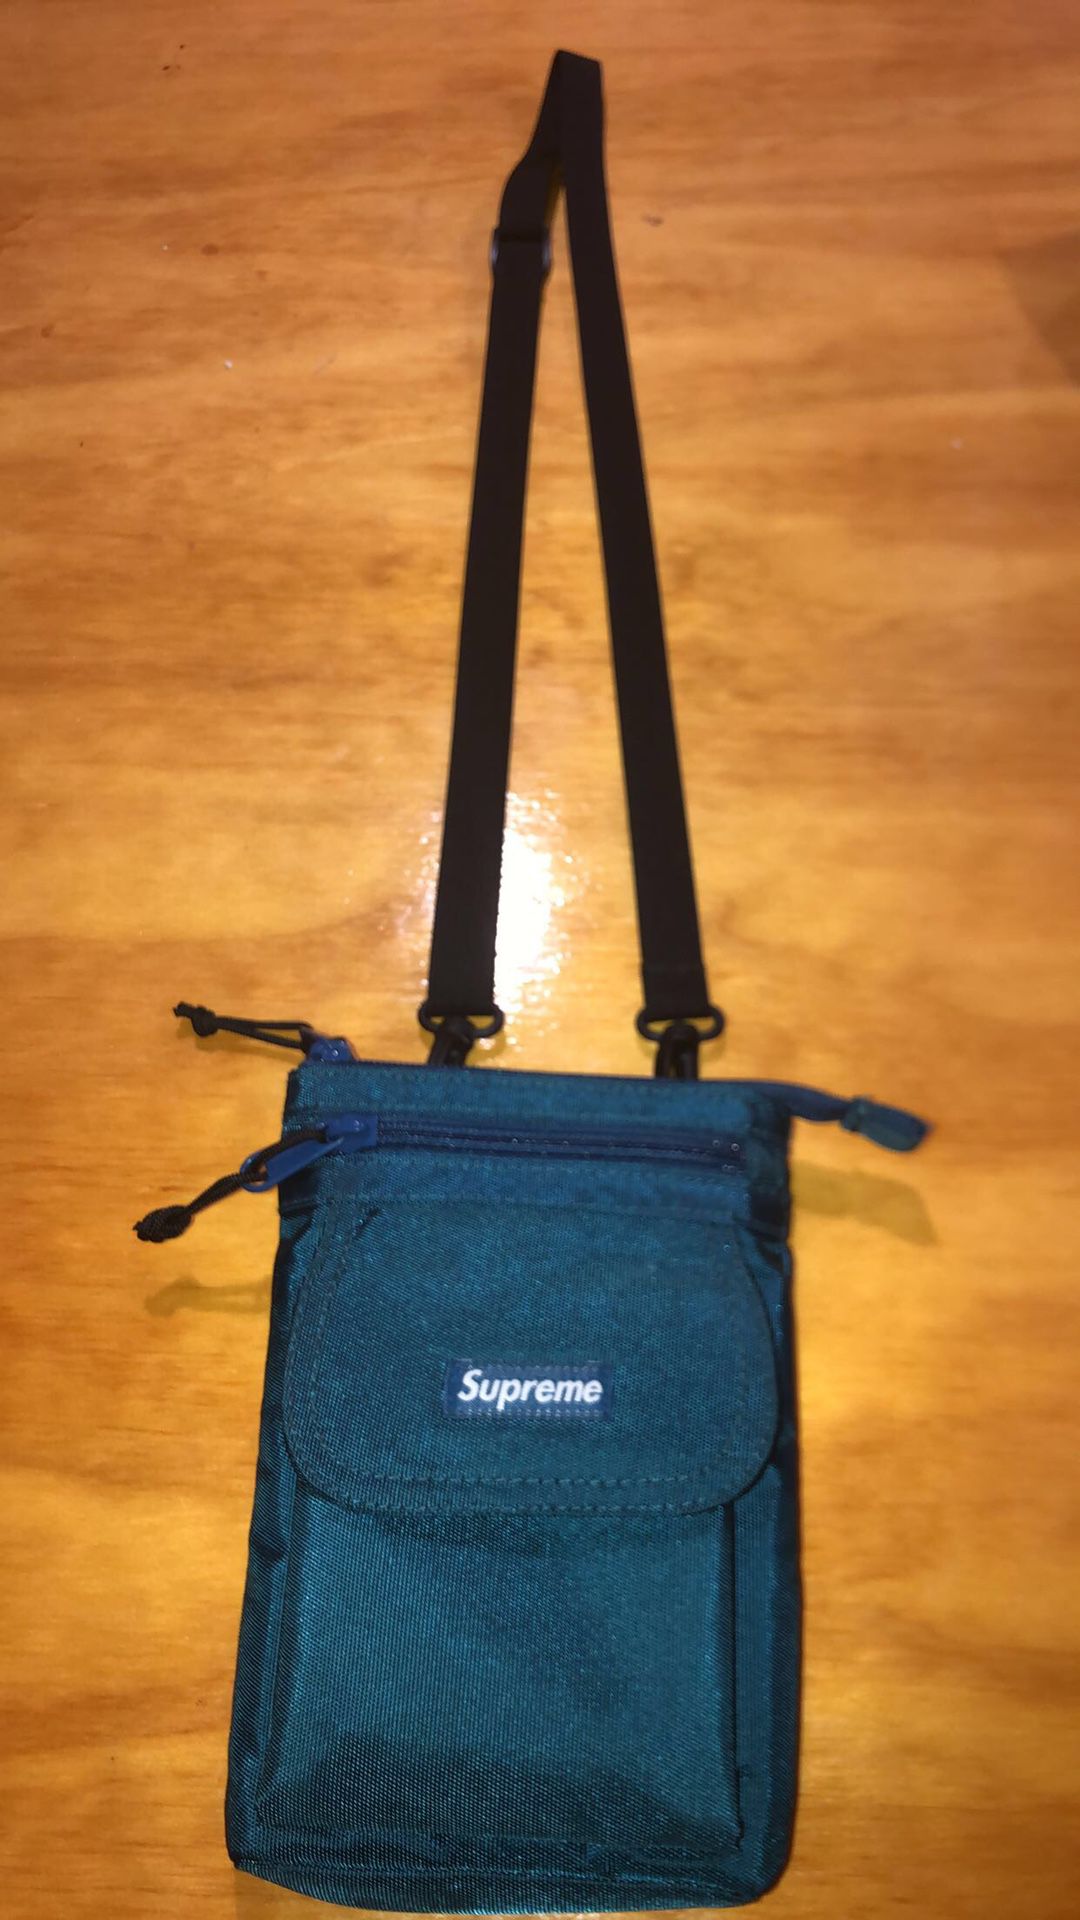 supreme bag teal